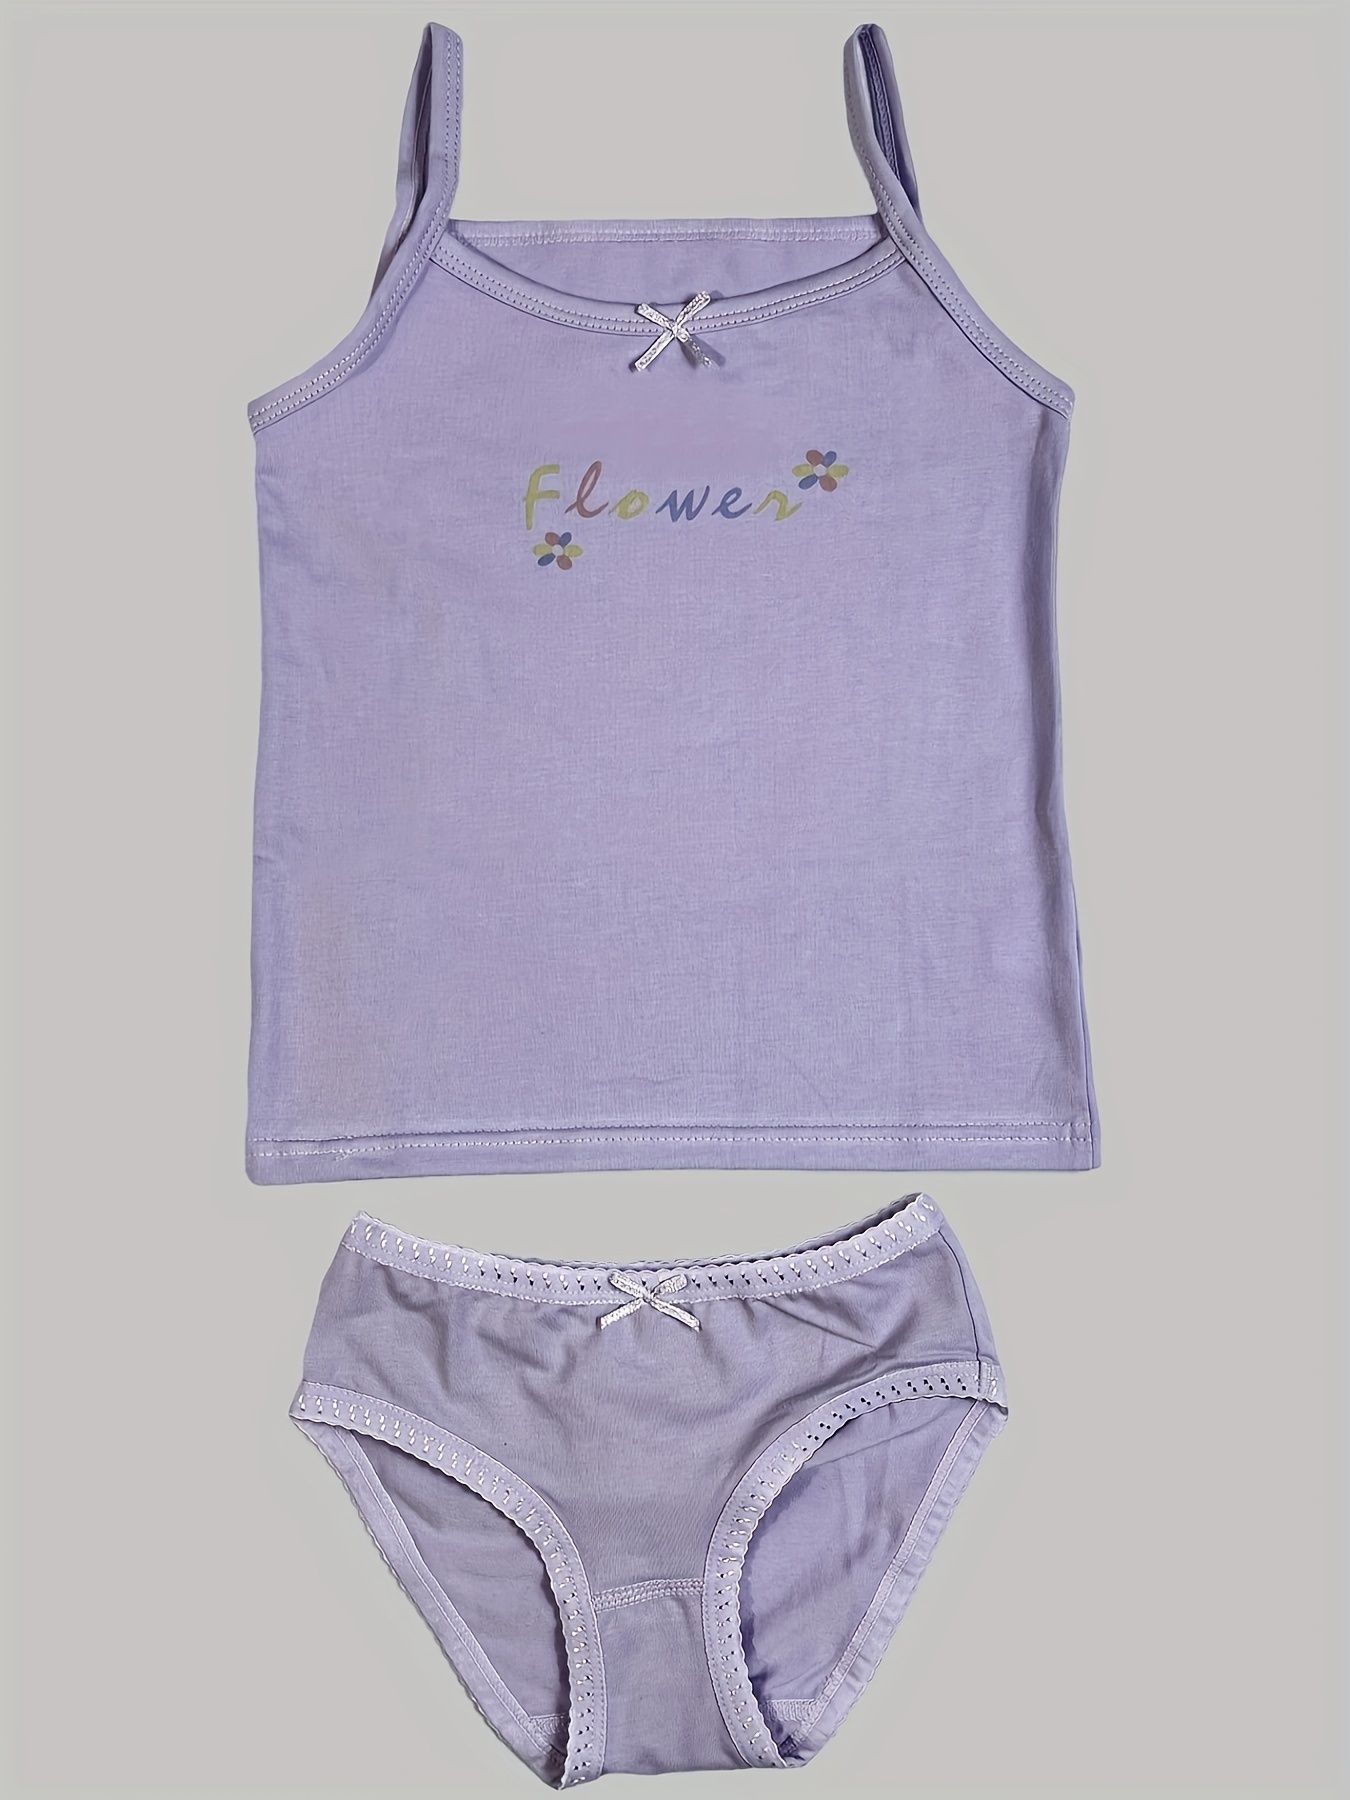 Camisole Children Girl Bra Cotton Letters Printed Teens Underwear